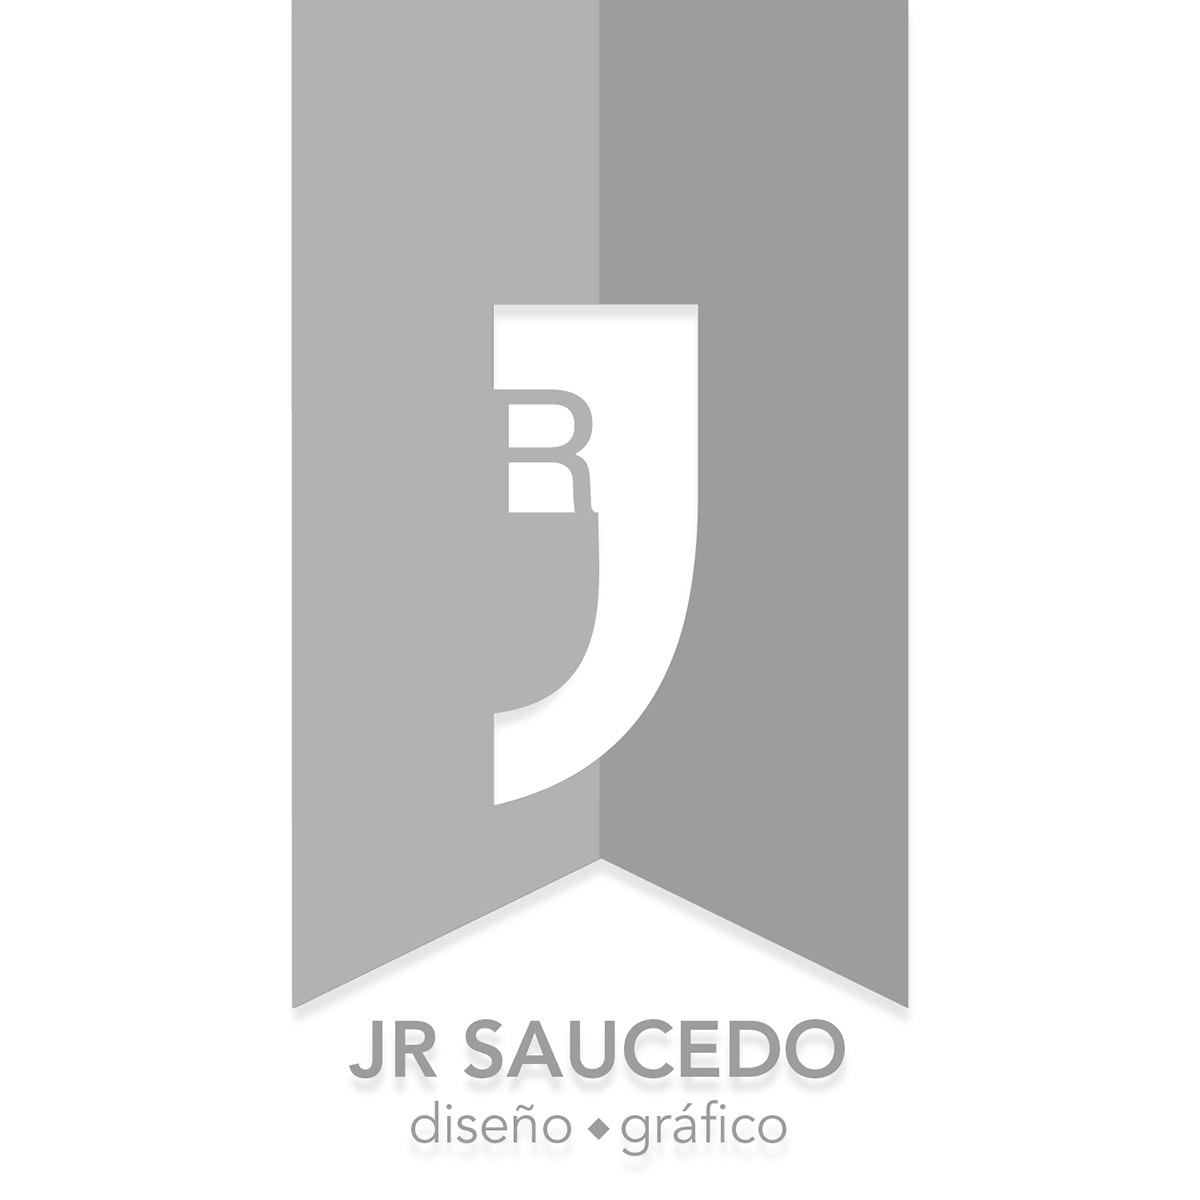 Logotype jrsaucedo jr logo